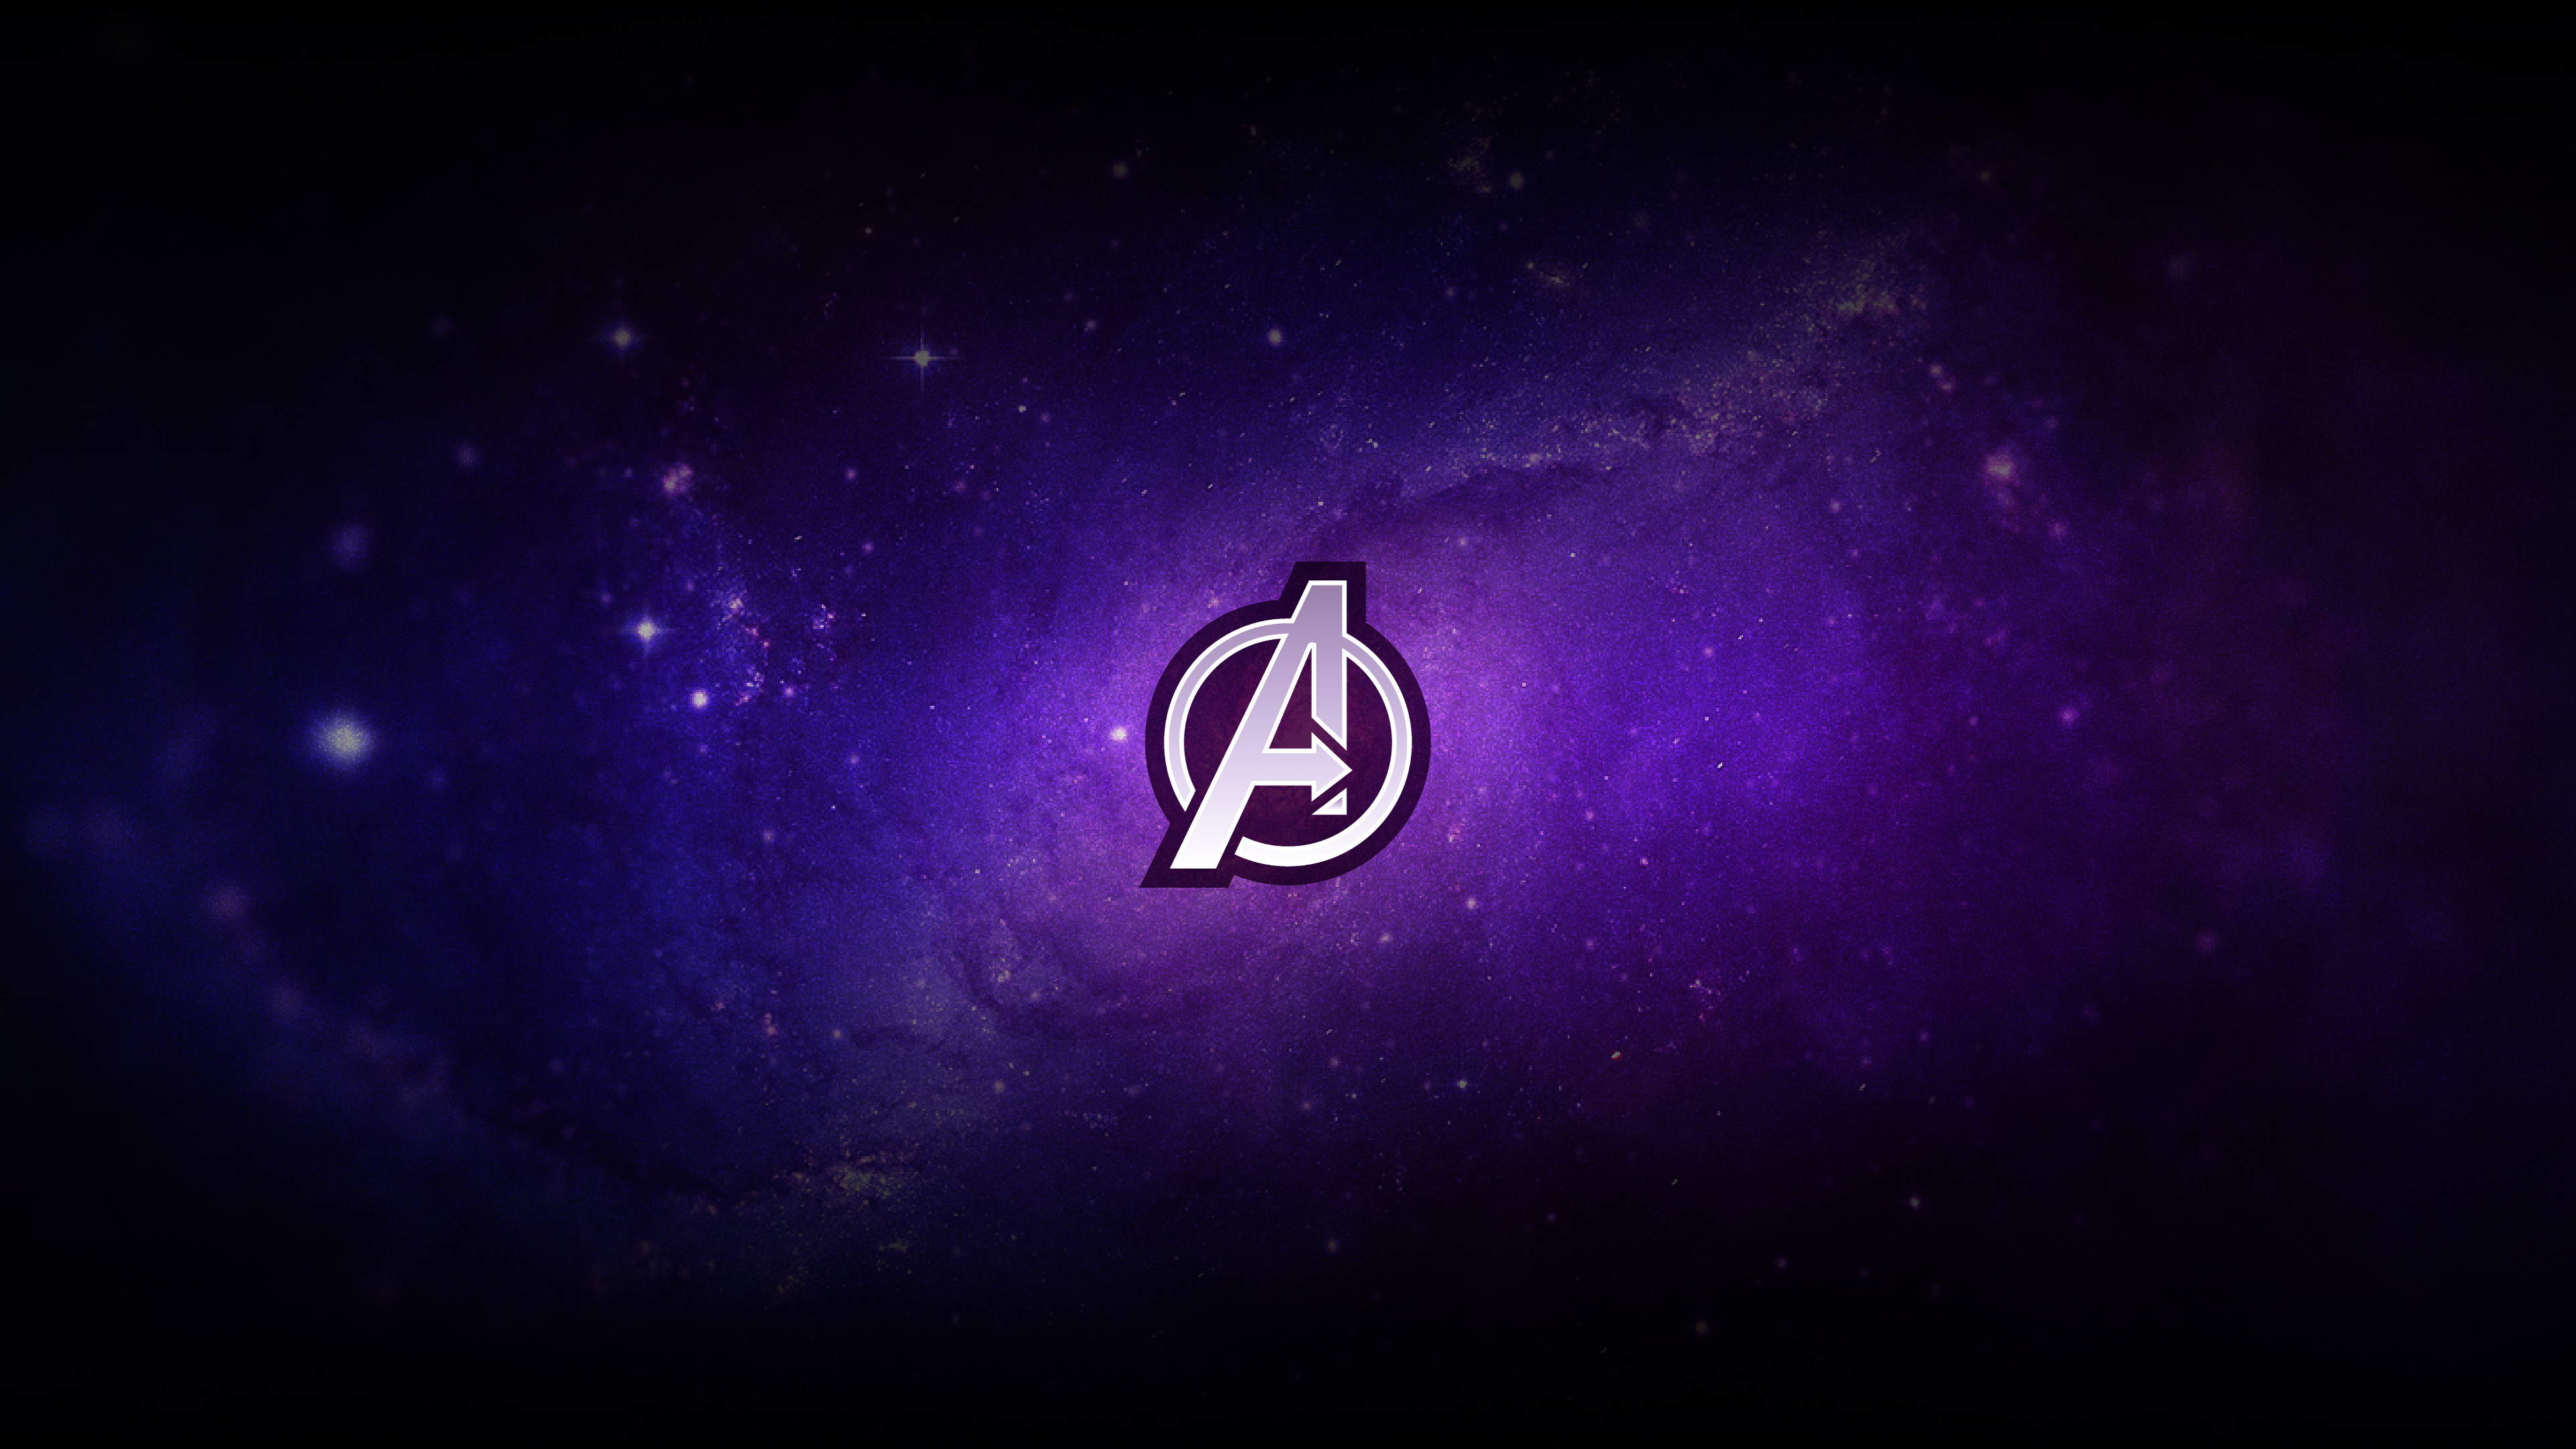 Logo Avengers Endgame Wallpaper 4k Ultra HD